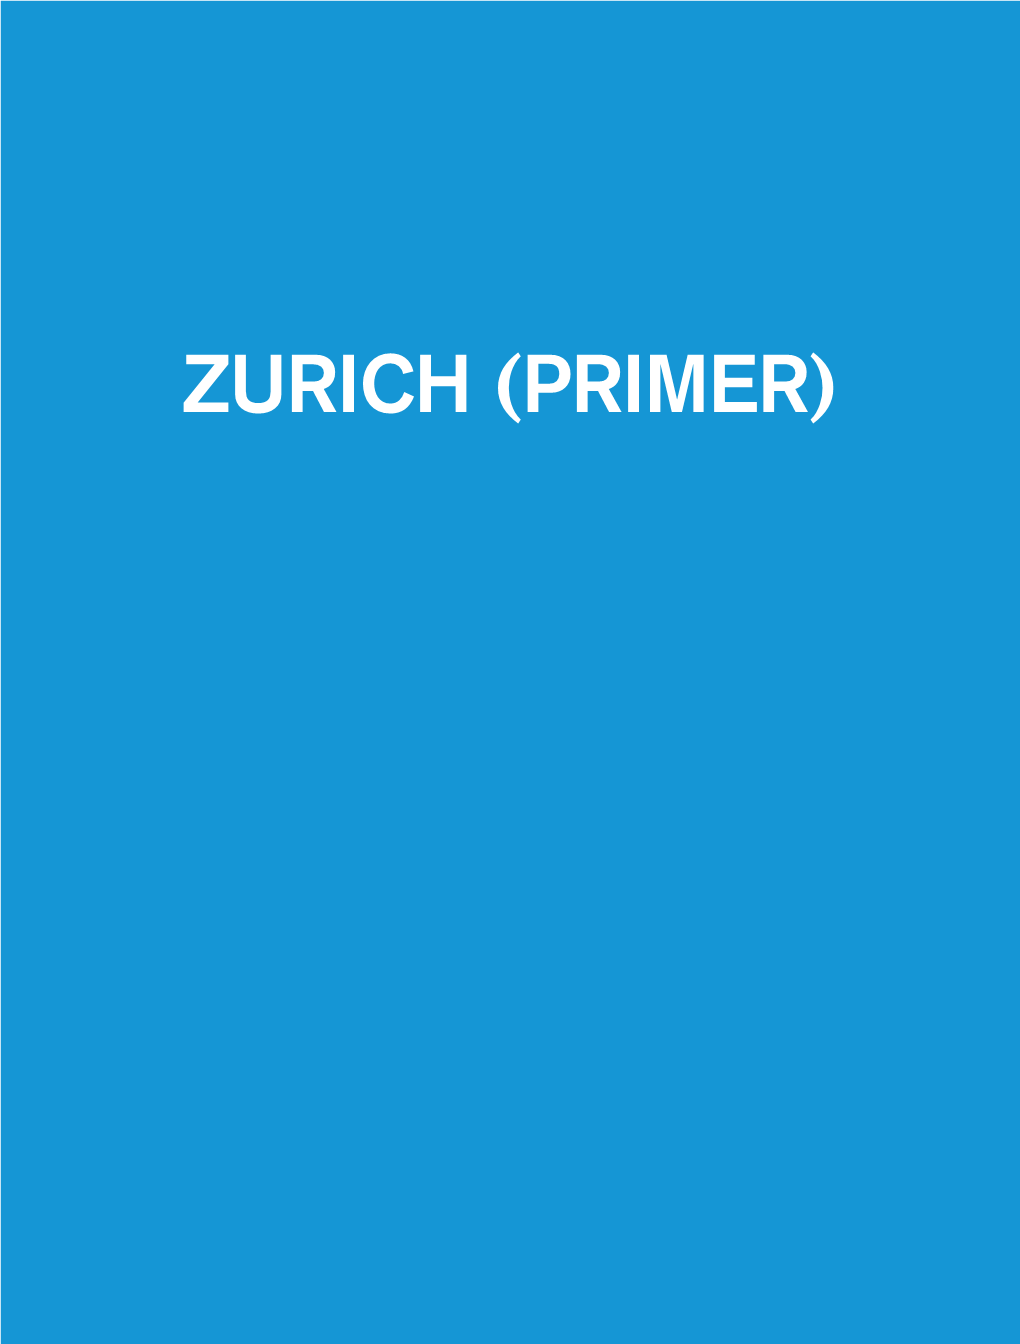 ZURICH (PRIMER) Studio Sergison a Plan for Zurich, 1-6 Primer